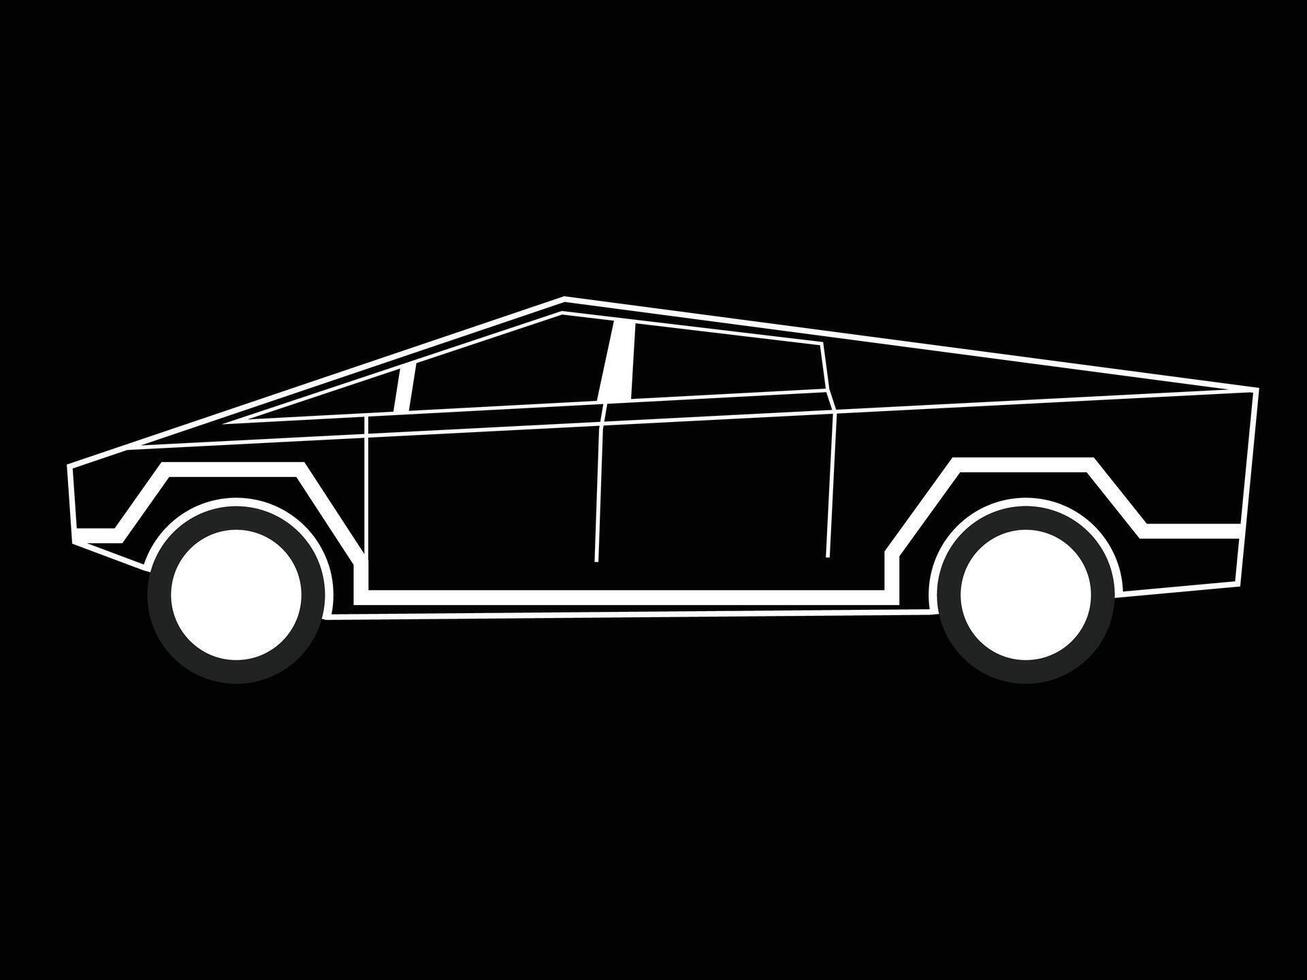 Tesla cybertruck minimalistische zwart en wit lijn kunst illustratie vector